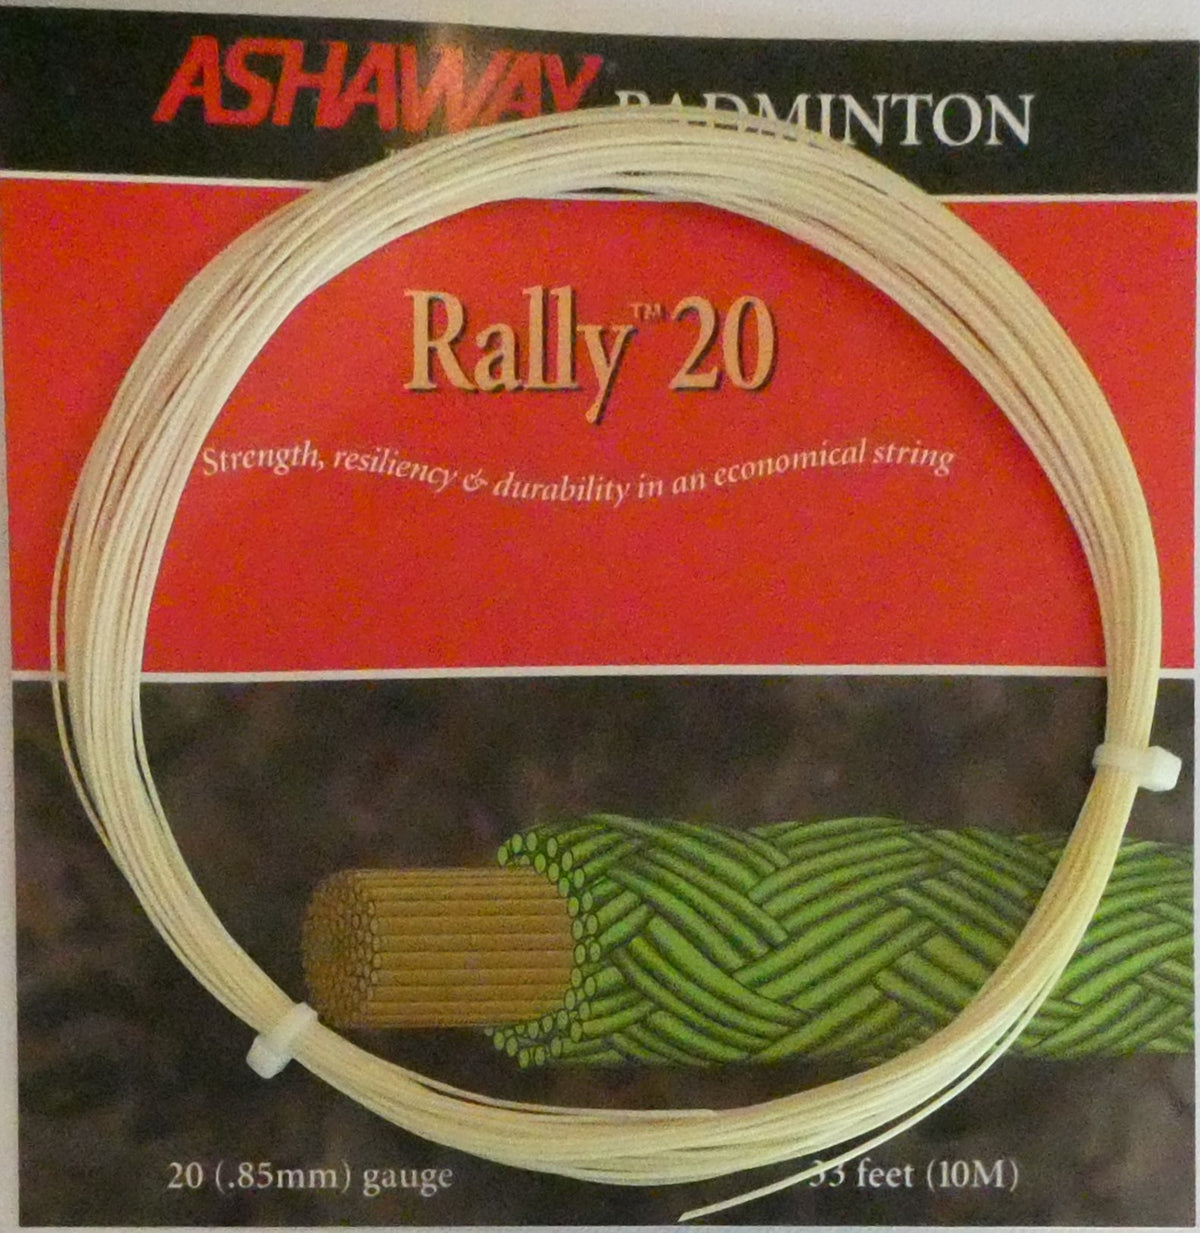 Ashaway Rally 20 Badminton String, Natural, 10 M SET